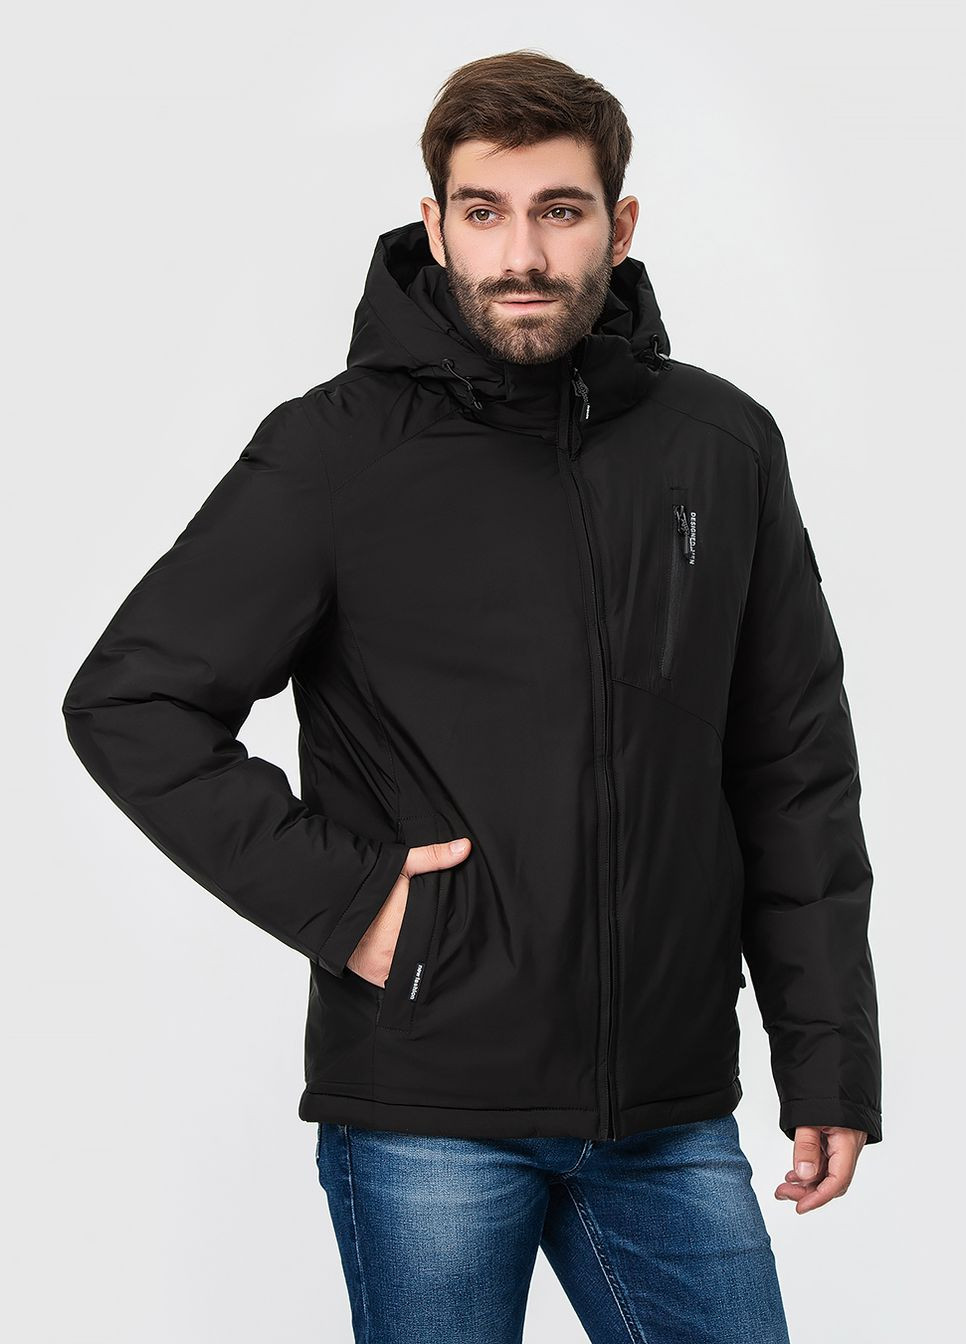 Черная зимняя утепленная куртка с капюшоном модель ZPJV 6087